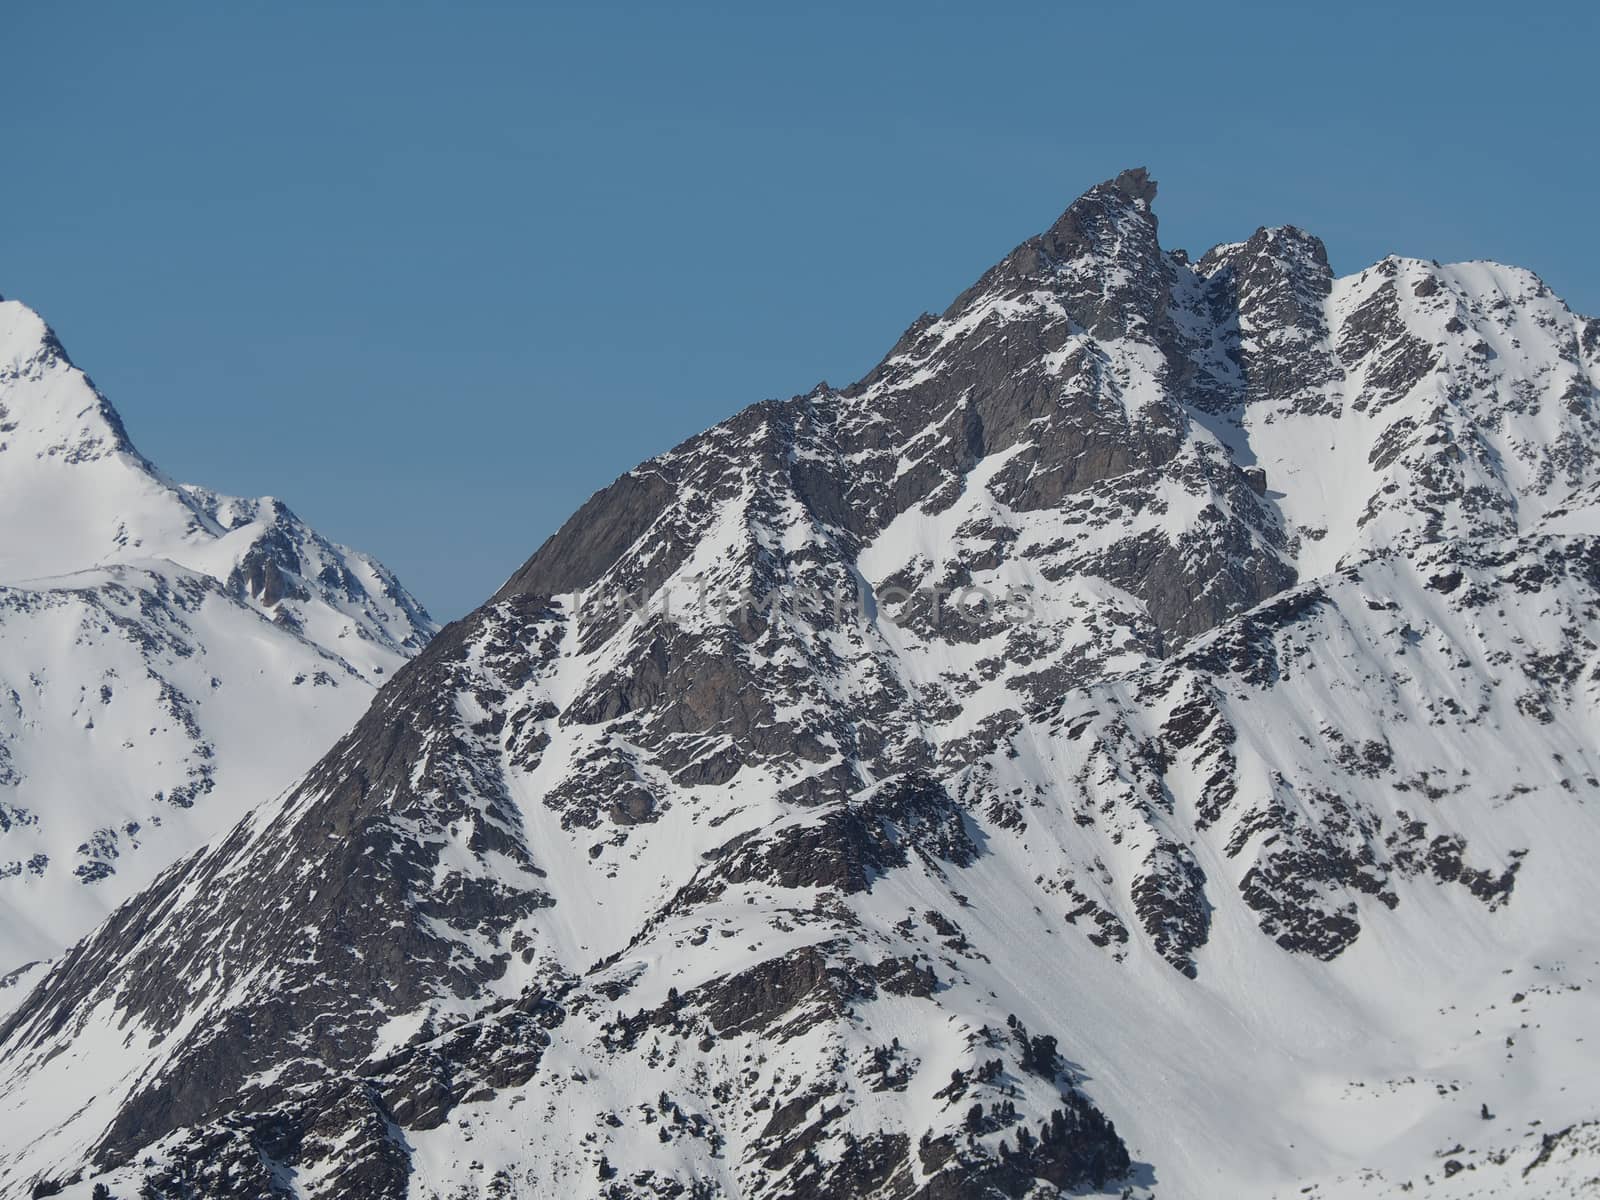 Alpine mountain peaks in europe in winter snow  by Henkeova